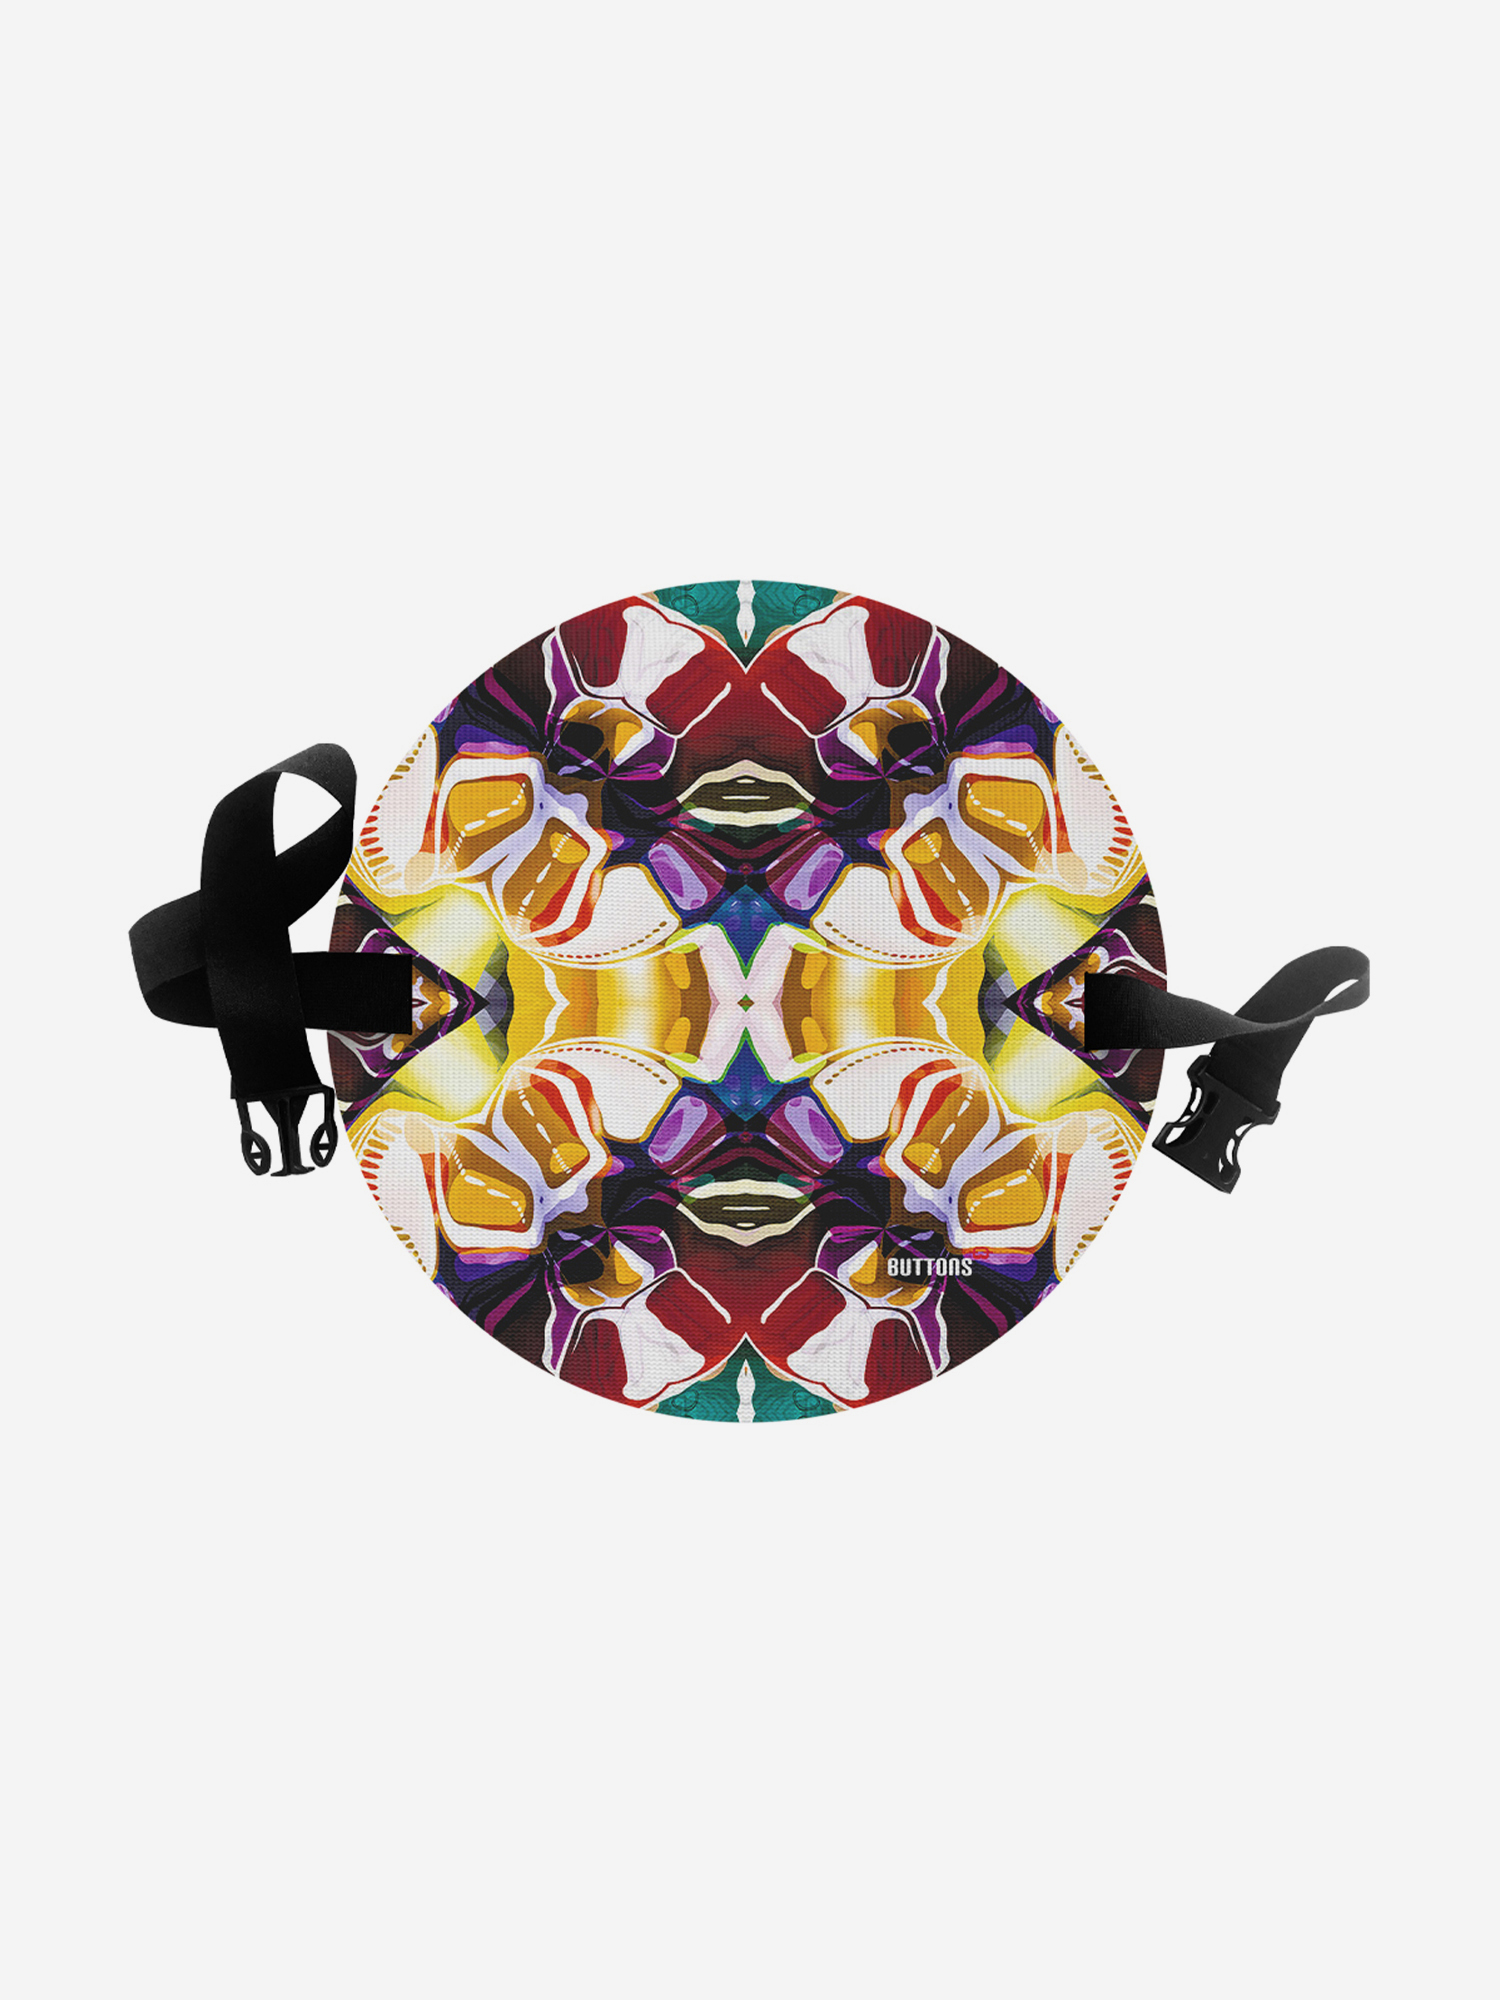 Сидушка туристическая круглая с рисунком, Мультицвет